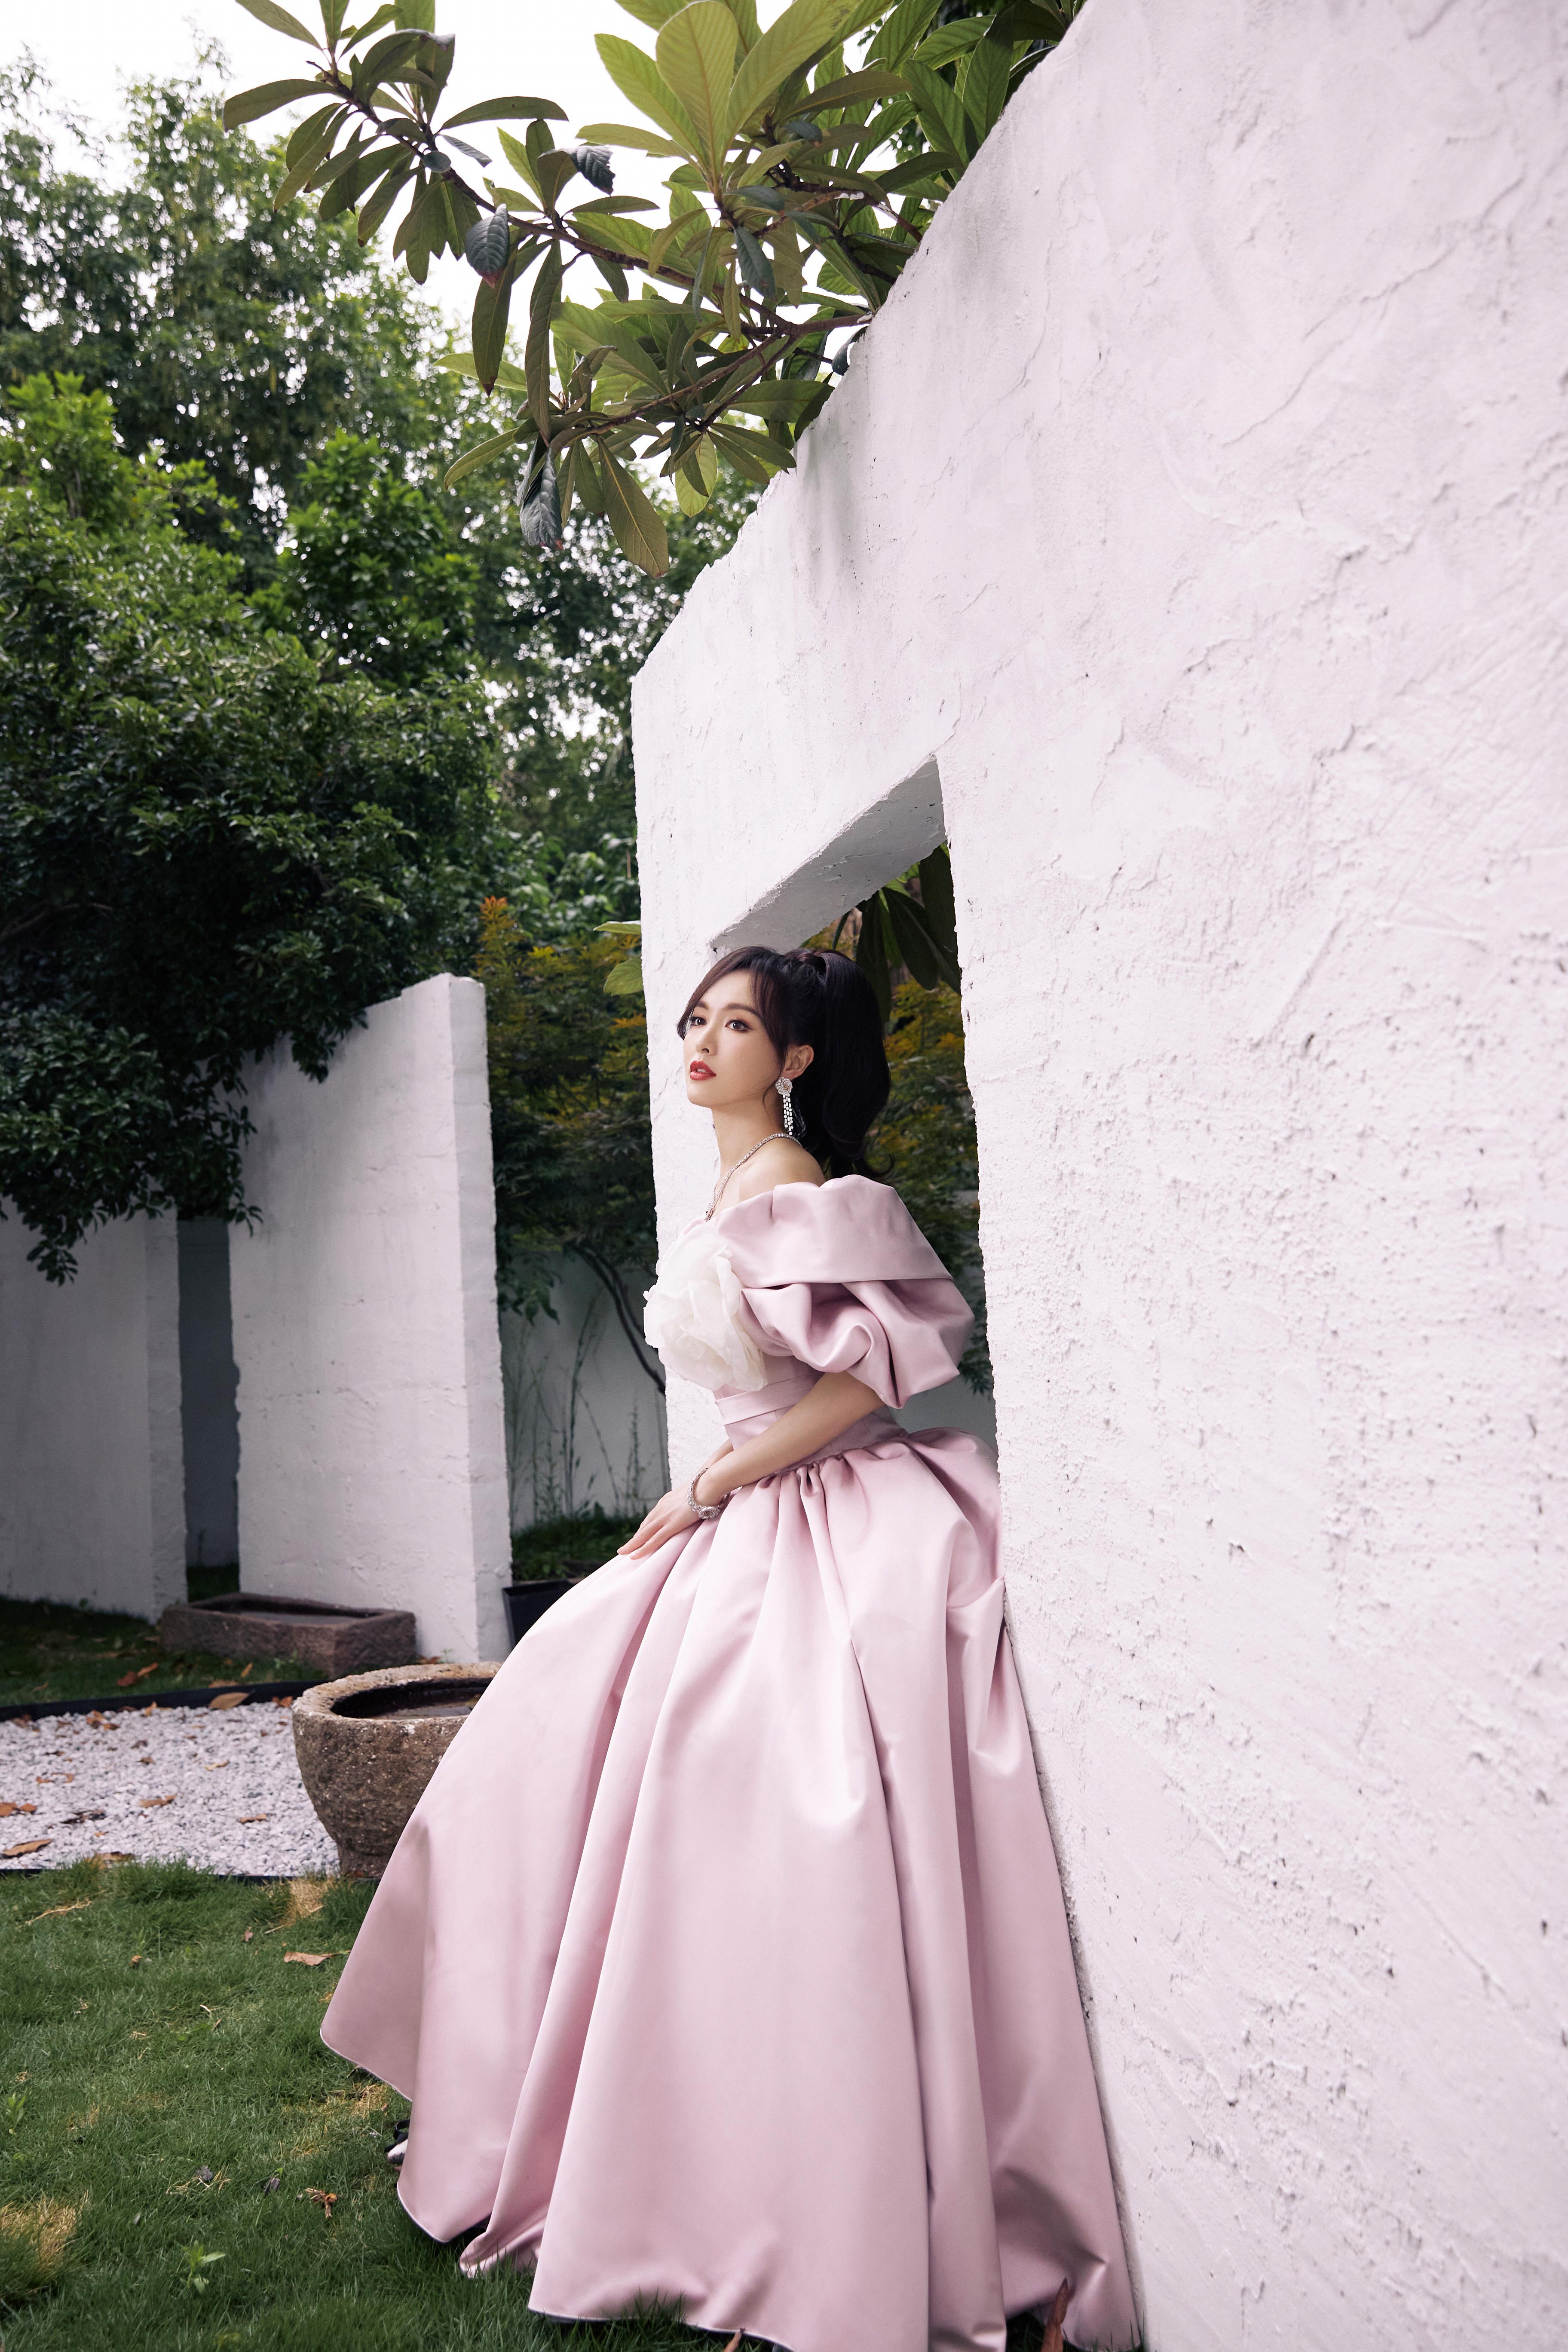 唐嫣粉色束腰裙造型复古优雅 白色大花朵点缀温柔甜美,1 (7)